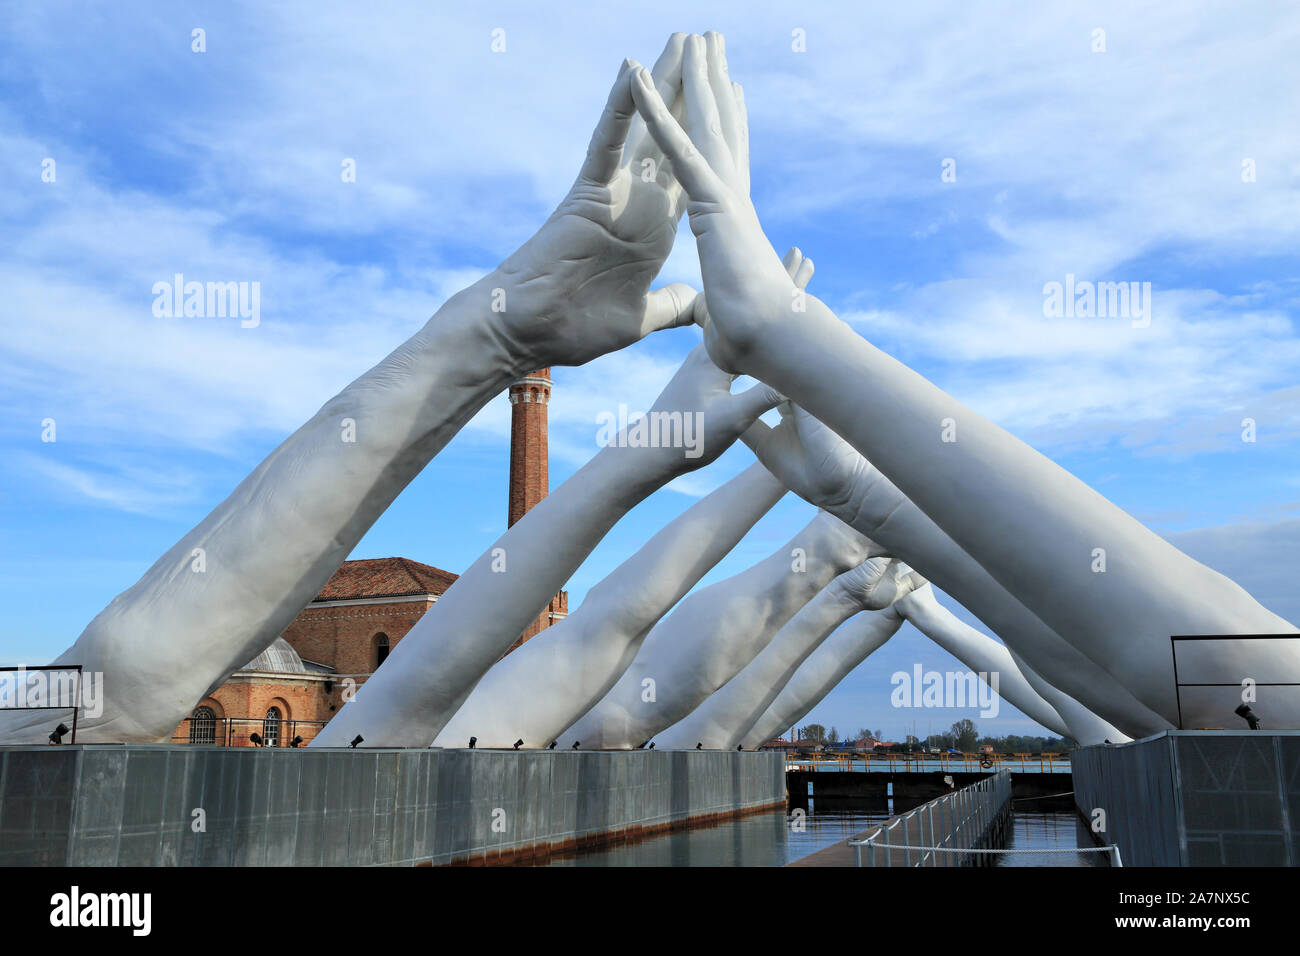 Art Biennale Venice 2019. Giant joined hands sculpture 'Building Bridges' by Lorenzo Quinn. Exhibition at Arsenale, Castello, Venice. Stock Photo